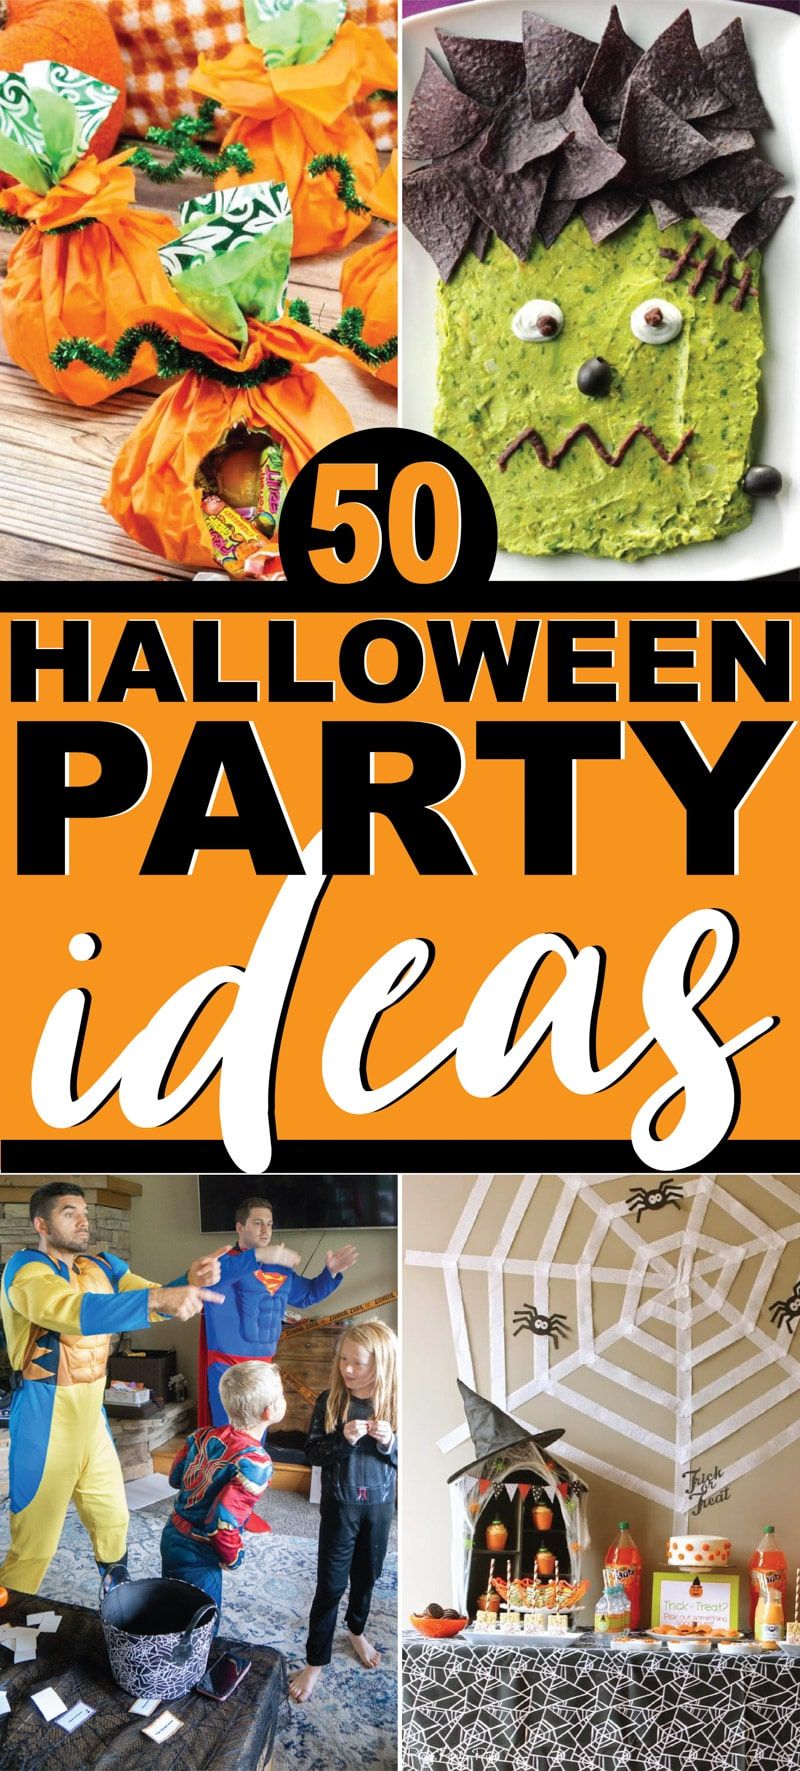 Die beste Sammlung von Halloween-Party-Ideen für alle Altersgruppen - Erwachsene, Kinder und Jugendliche!